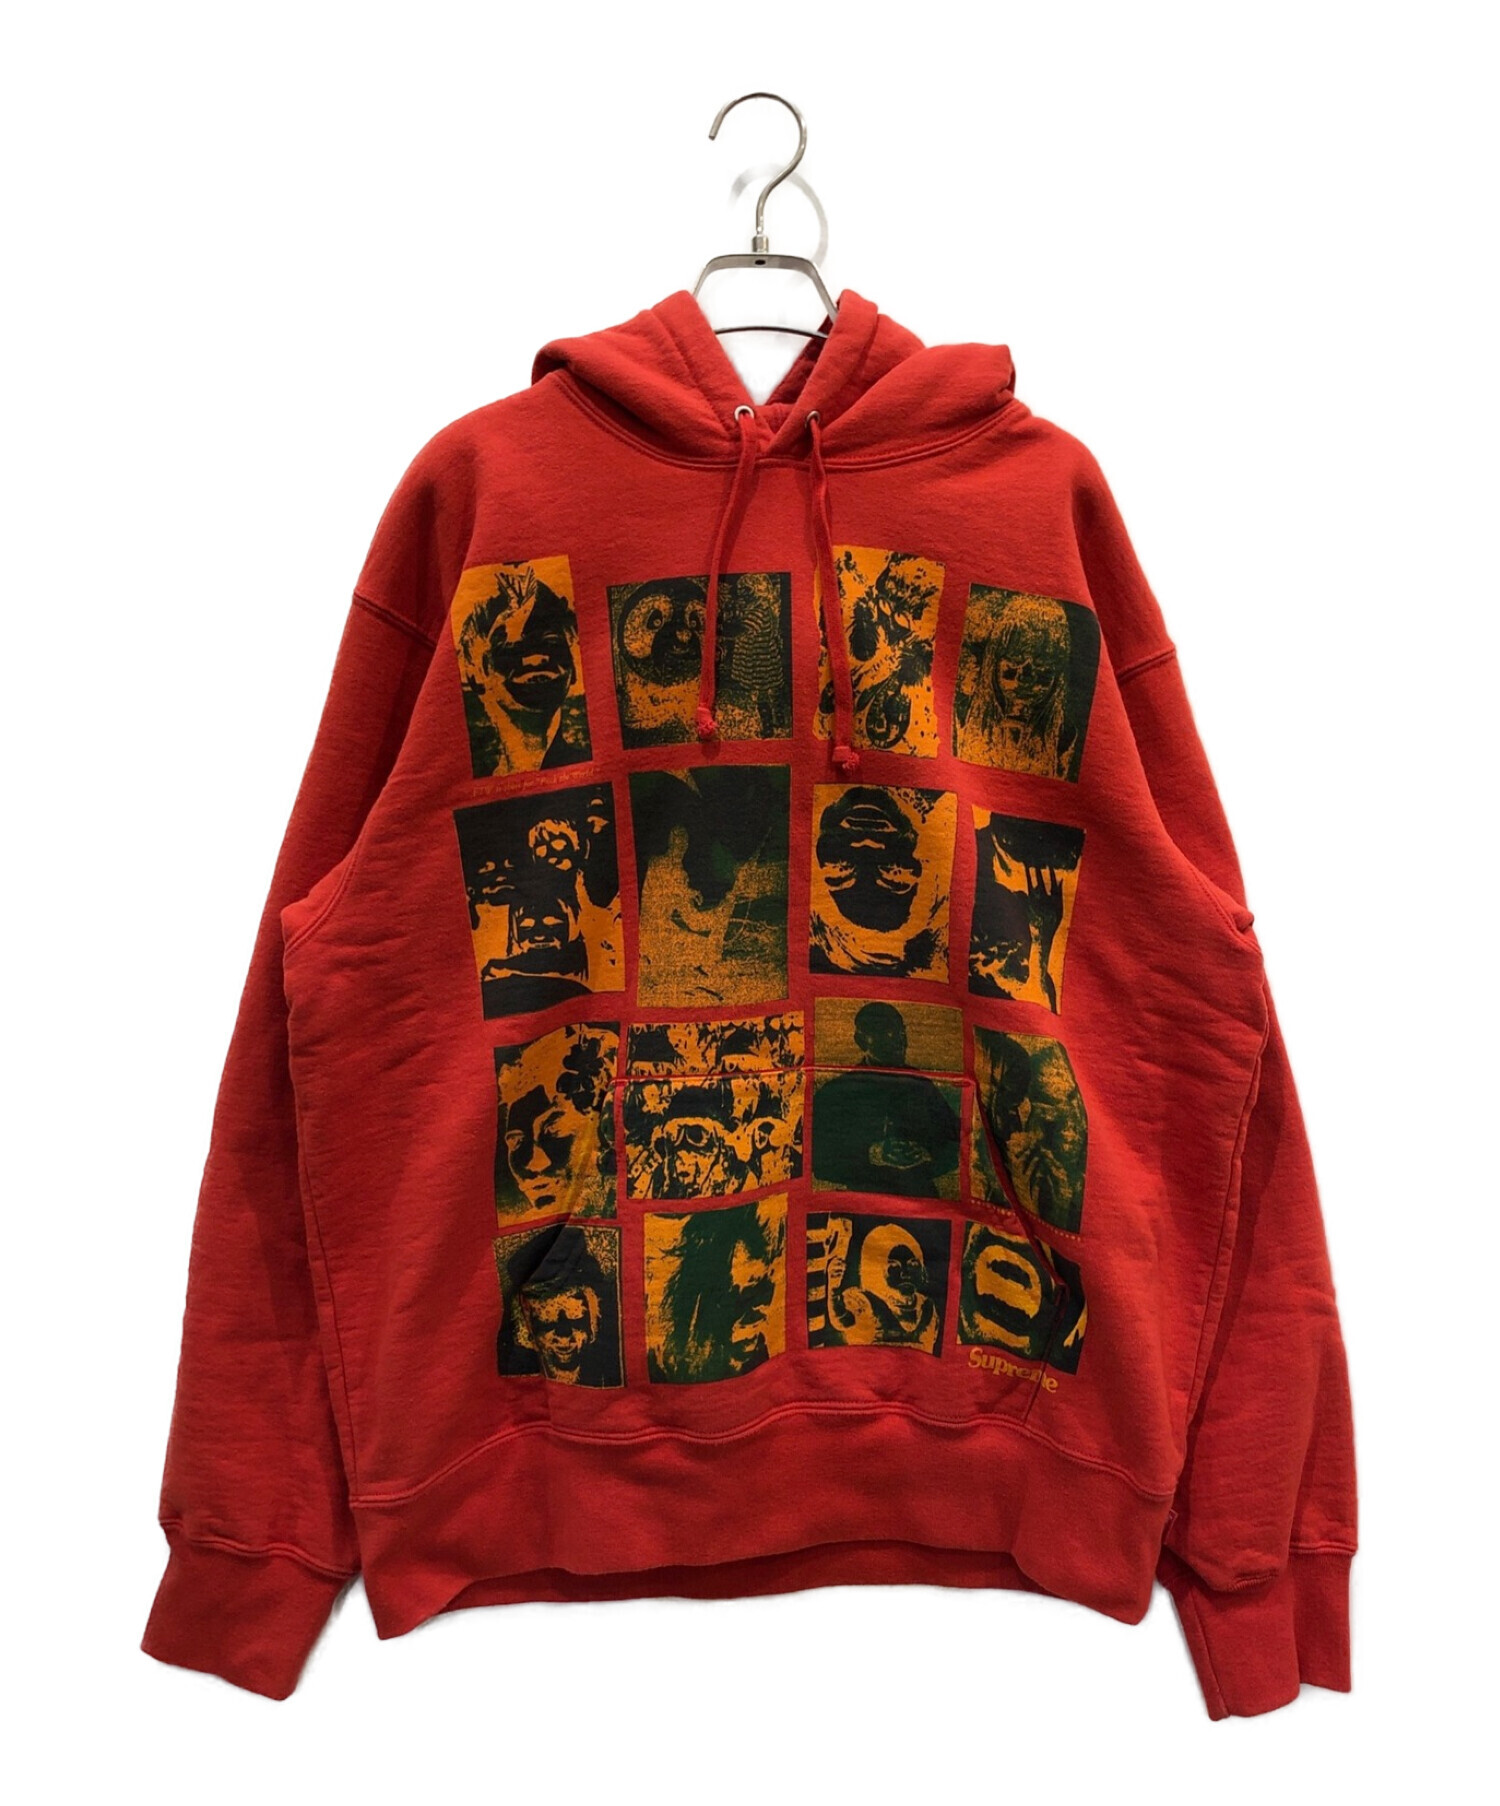 Supreme (シュプリーム) Collage Grid Hooded Sweatshirt レッド サイズ:M